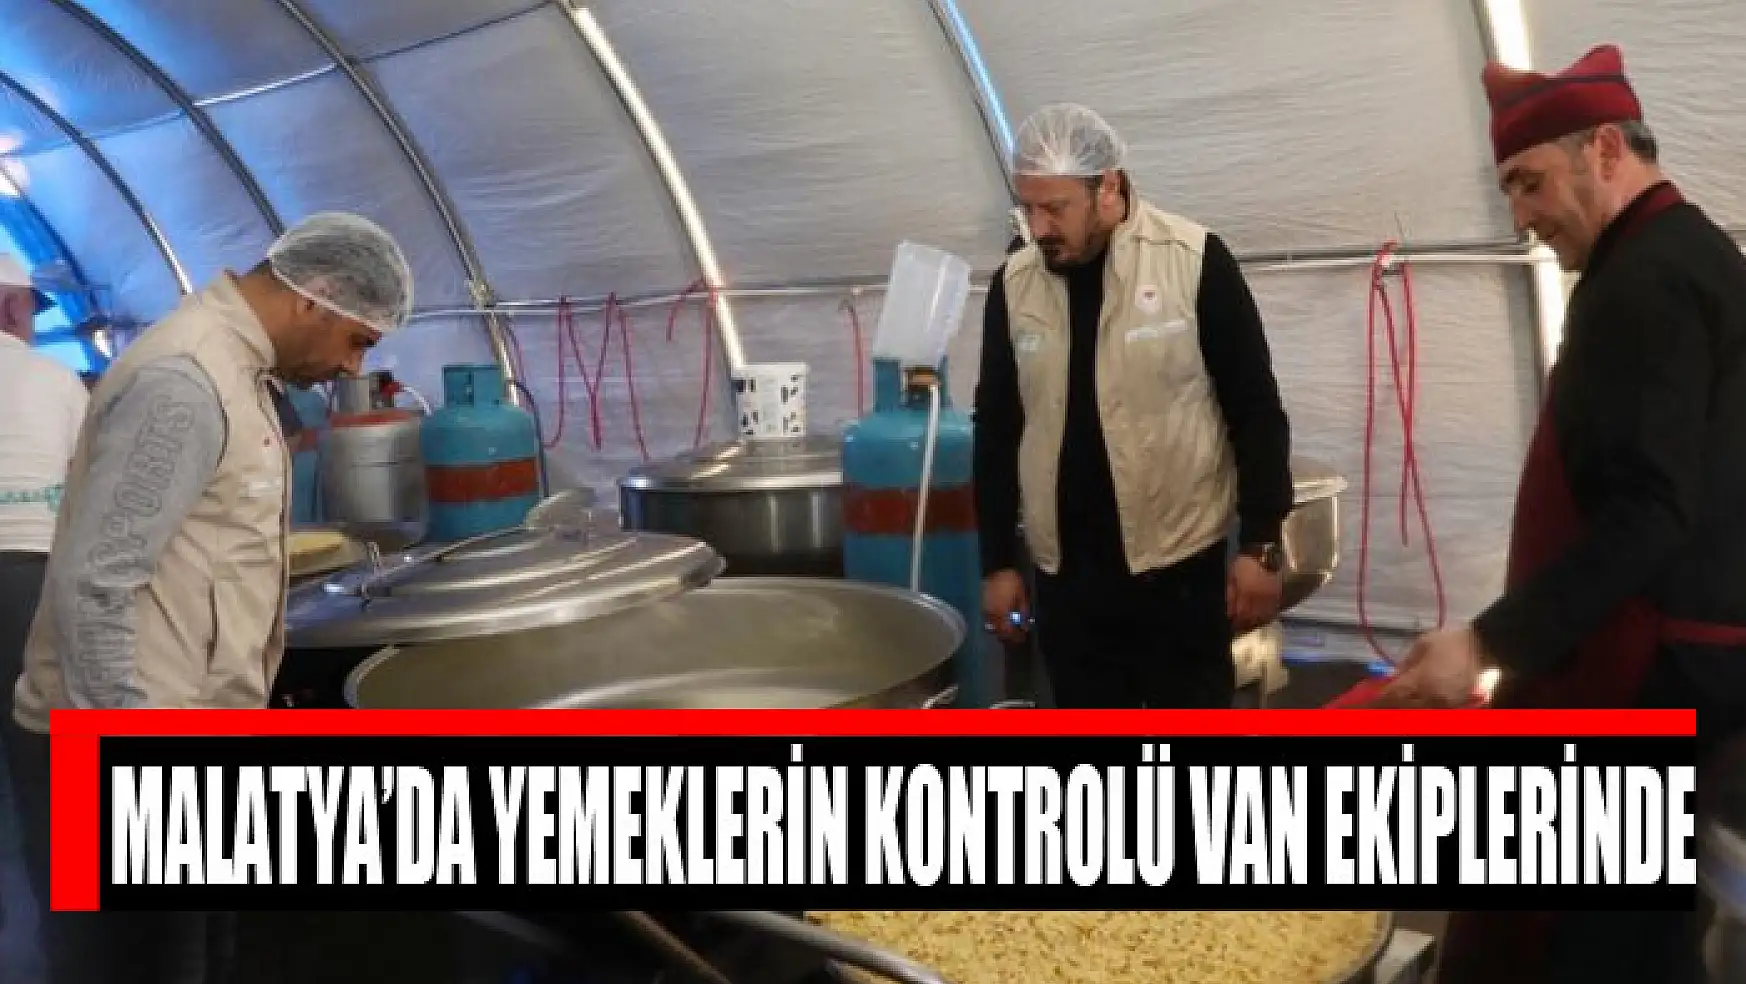 Malatya'da yemeklerin kontrolü Van ekiplerinde